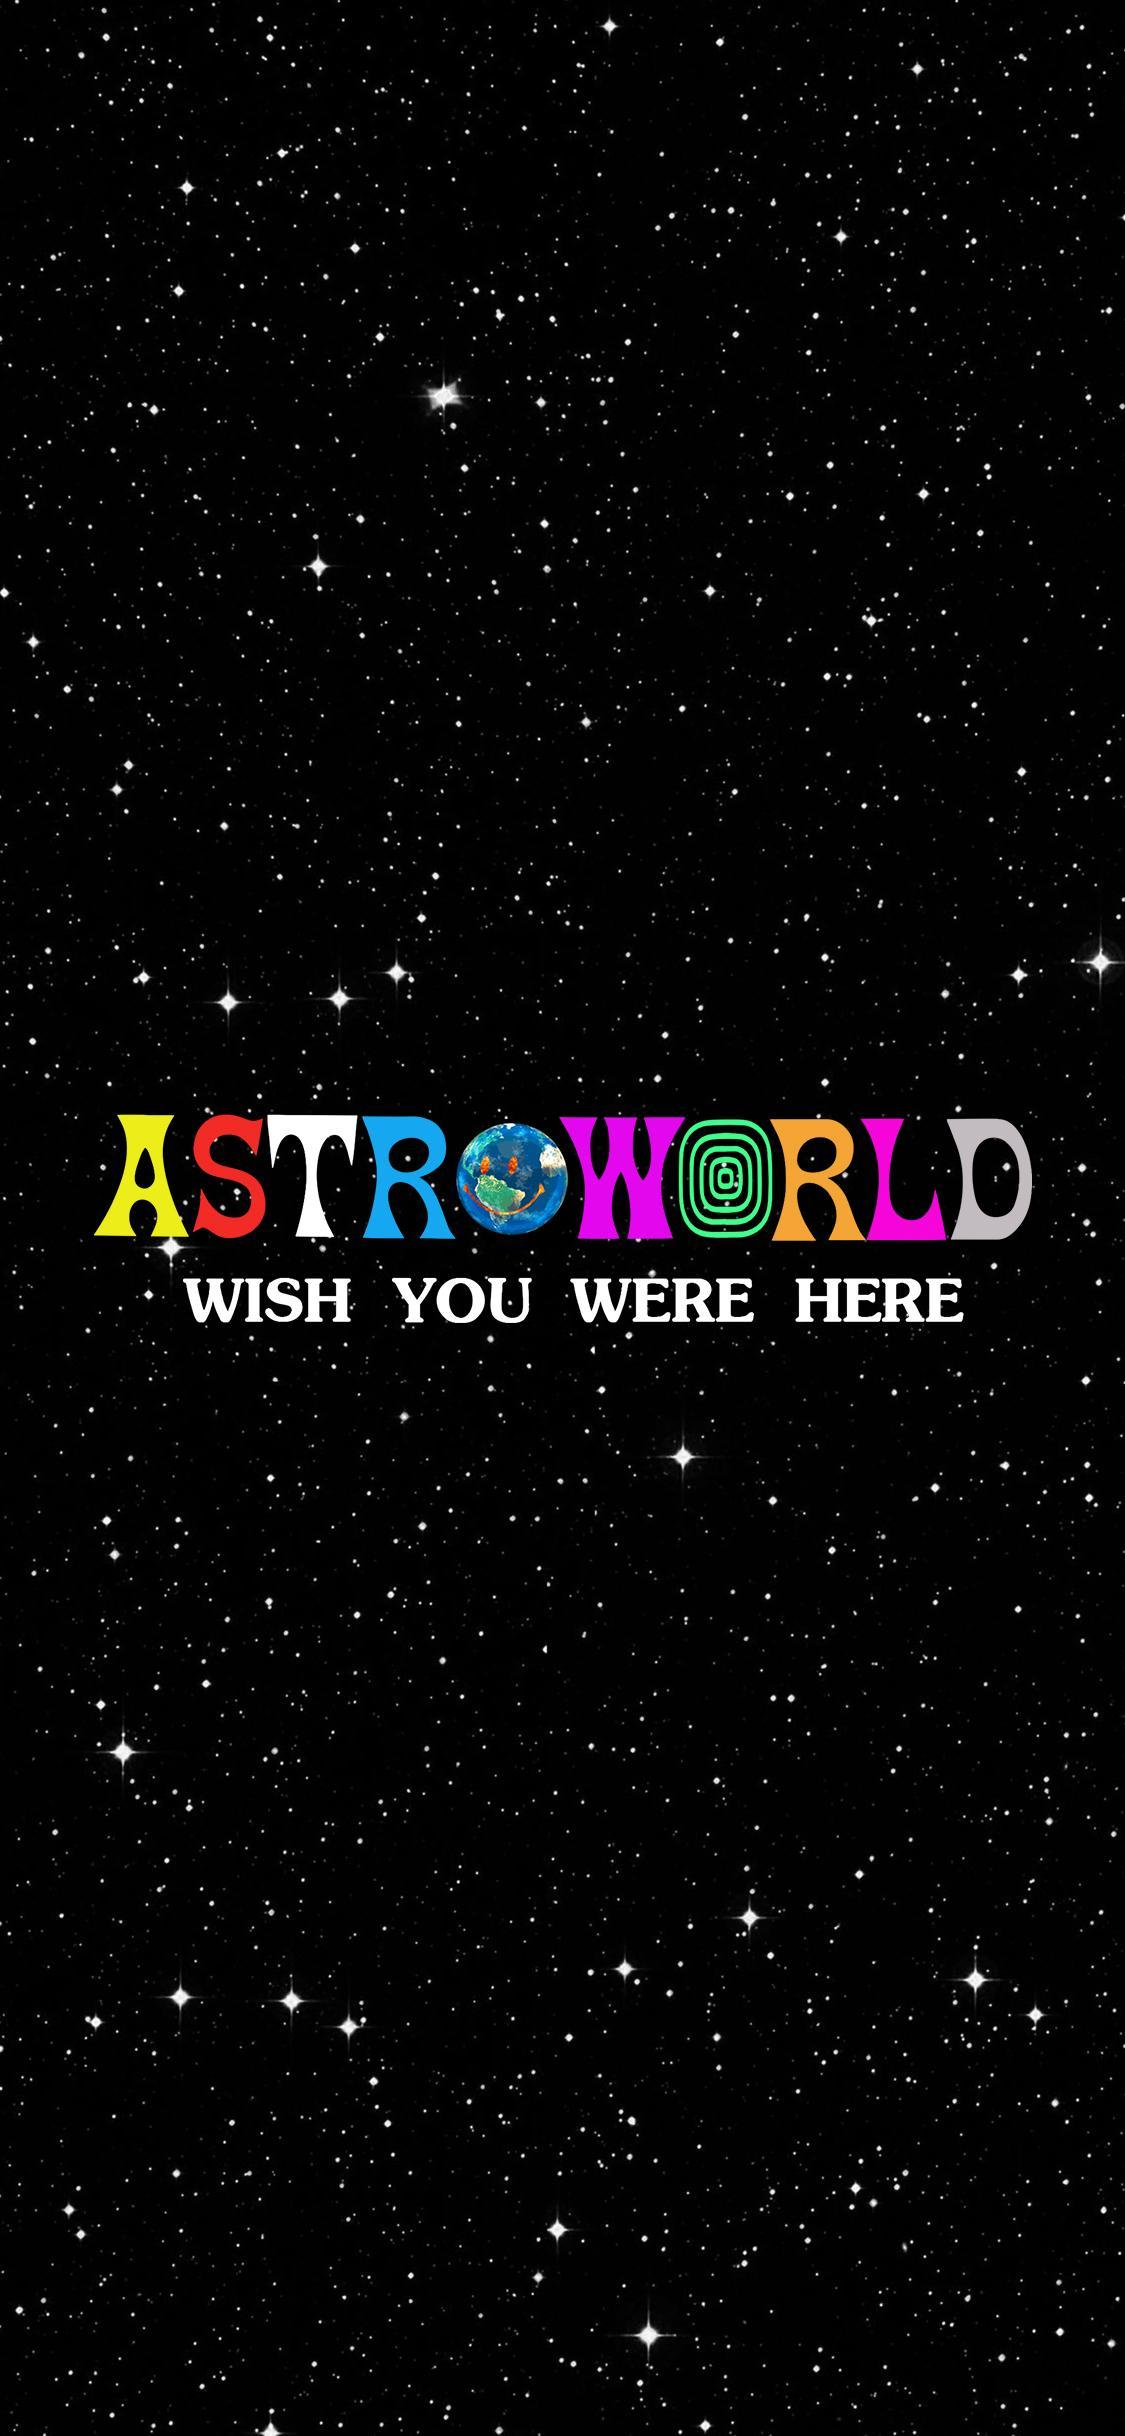 1125x2436 hình ảnh]Astroworld Hình nền iPhone X [1125x2436] : travisscott